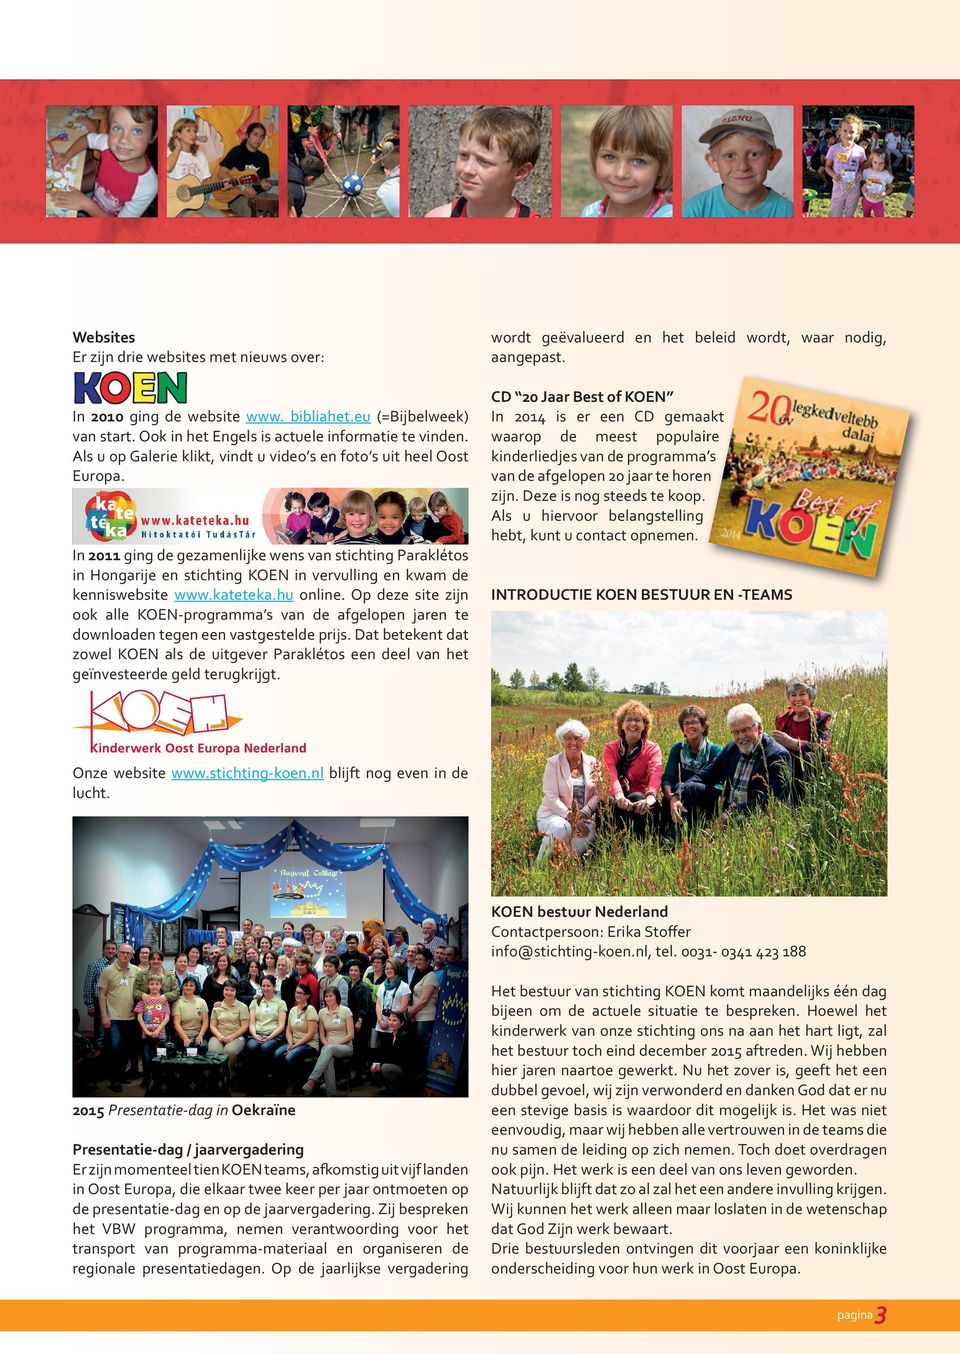 In 2011 ging de gezamenlijke wens van stichting Paraklétos in Hongarije en stichting KOEN in vervulling en kwam de kenniswebsite www.kateteka.hu online.